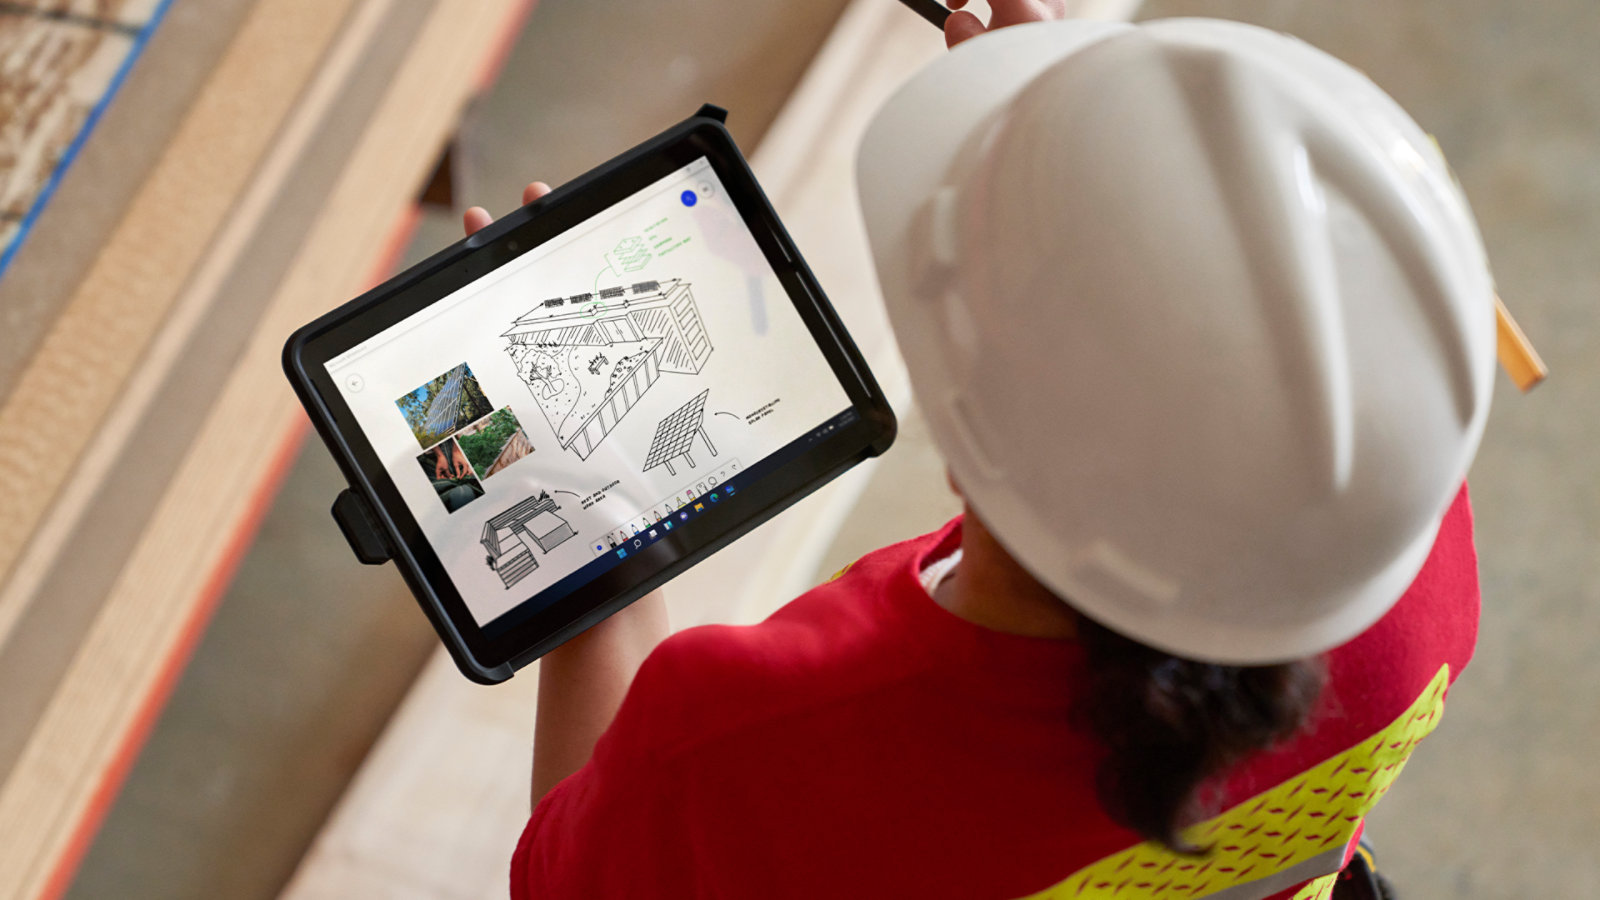 Iemand met een helm gebruikt een Surface Go 4 voor zakelijk gebruik op een bouwplaats, op die manier de mogelijkheden van het apparaat voor onderweg verduidelijkend.